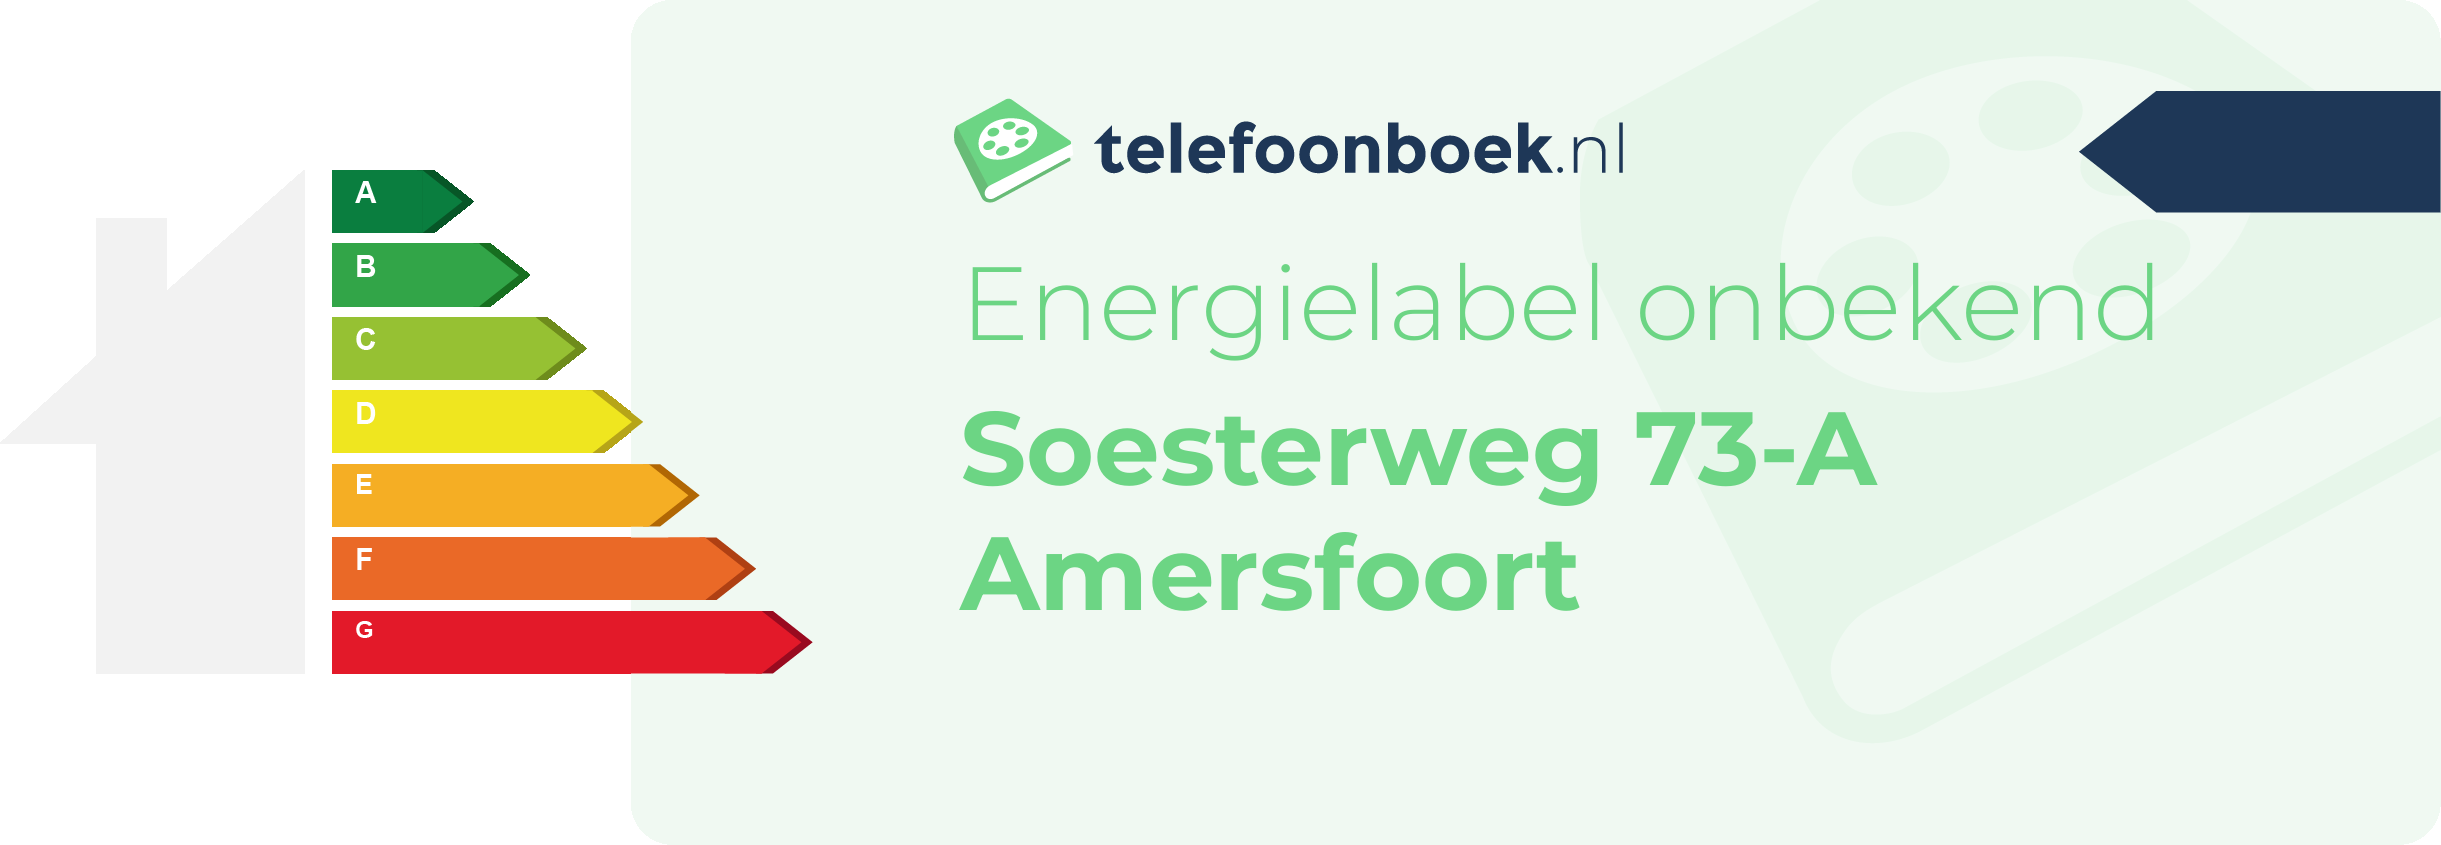 Energielabel Soesterweg 73-A Amersfoort